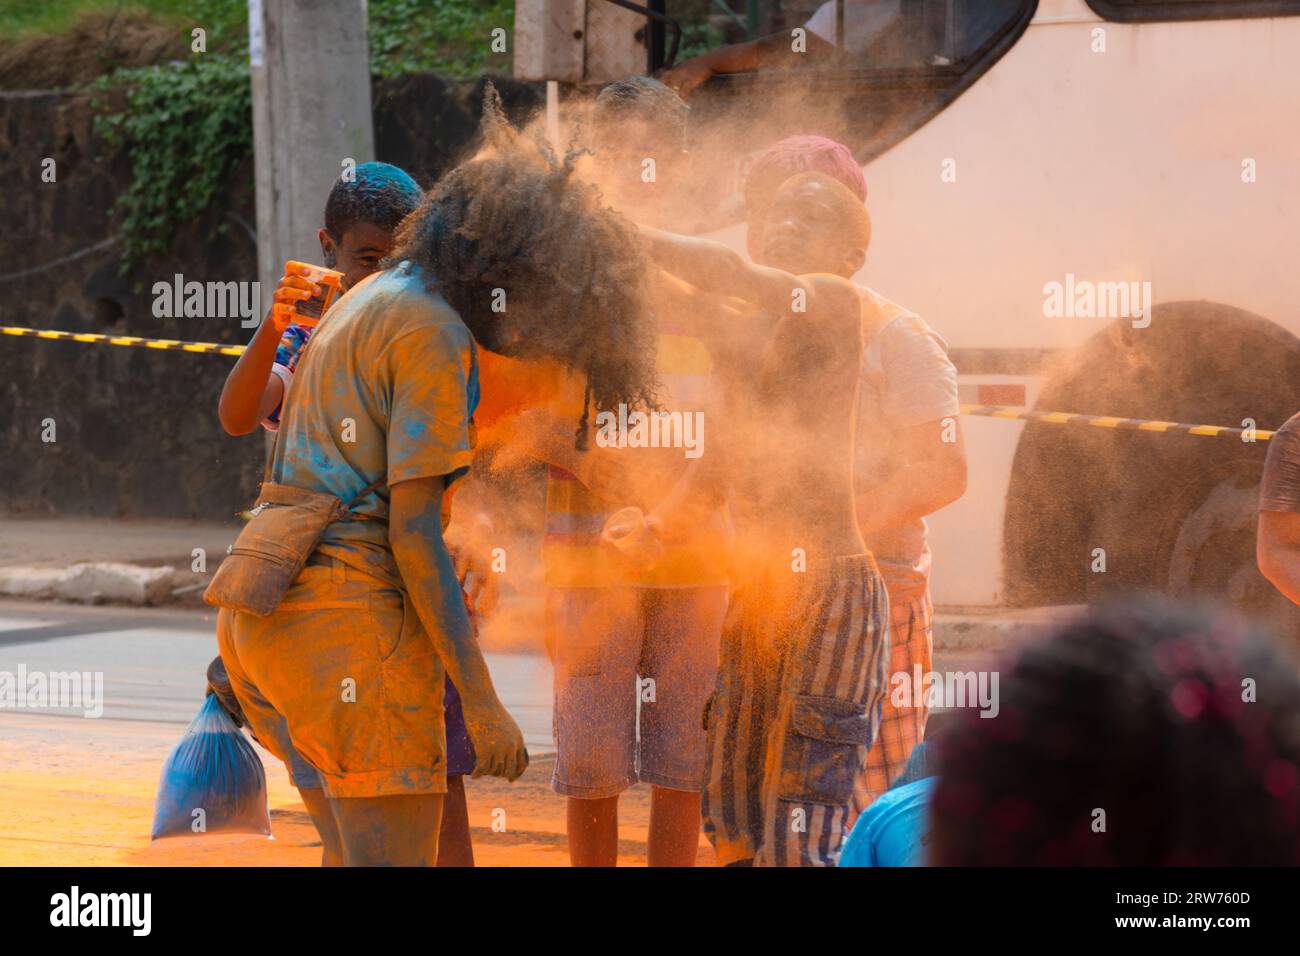 Salvador, Bahia, Brasilien - 22. März 2015: Die Leute haben Spaß mit Farbpulver während eines bunten Rennens im Dique do Tororo in der Stadt Salvador, Bahia. Stockfoto